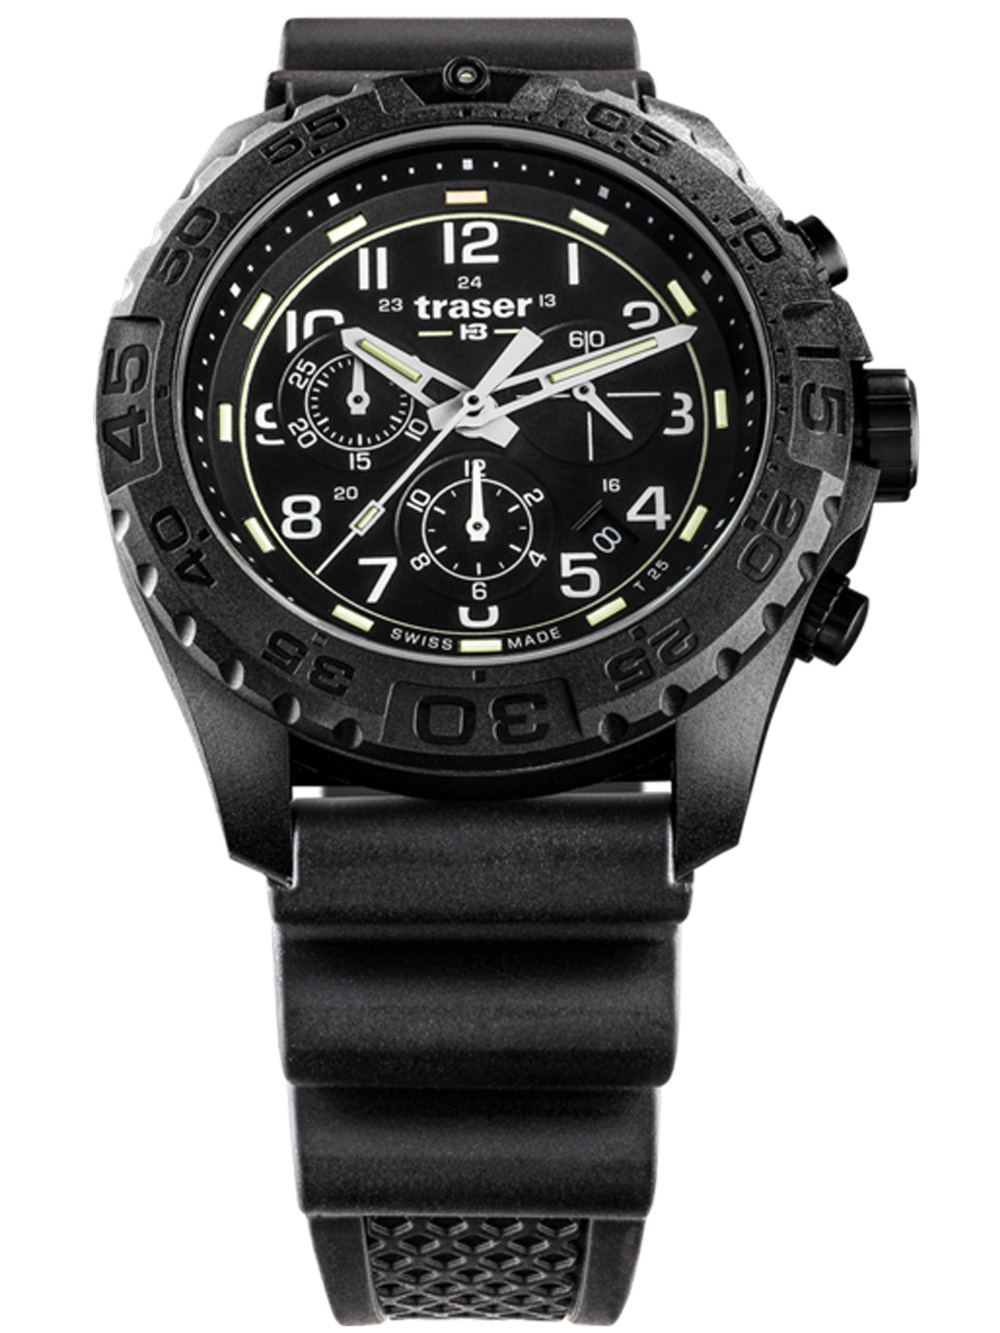 Pánské hodinky Traser H3 108679 P96 OdP Evolution black